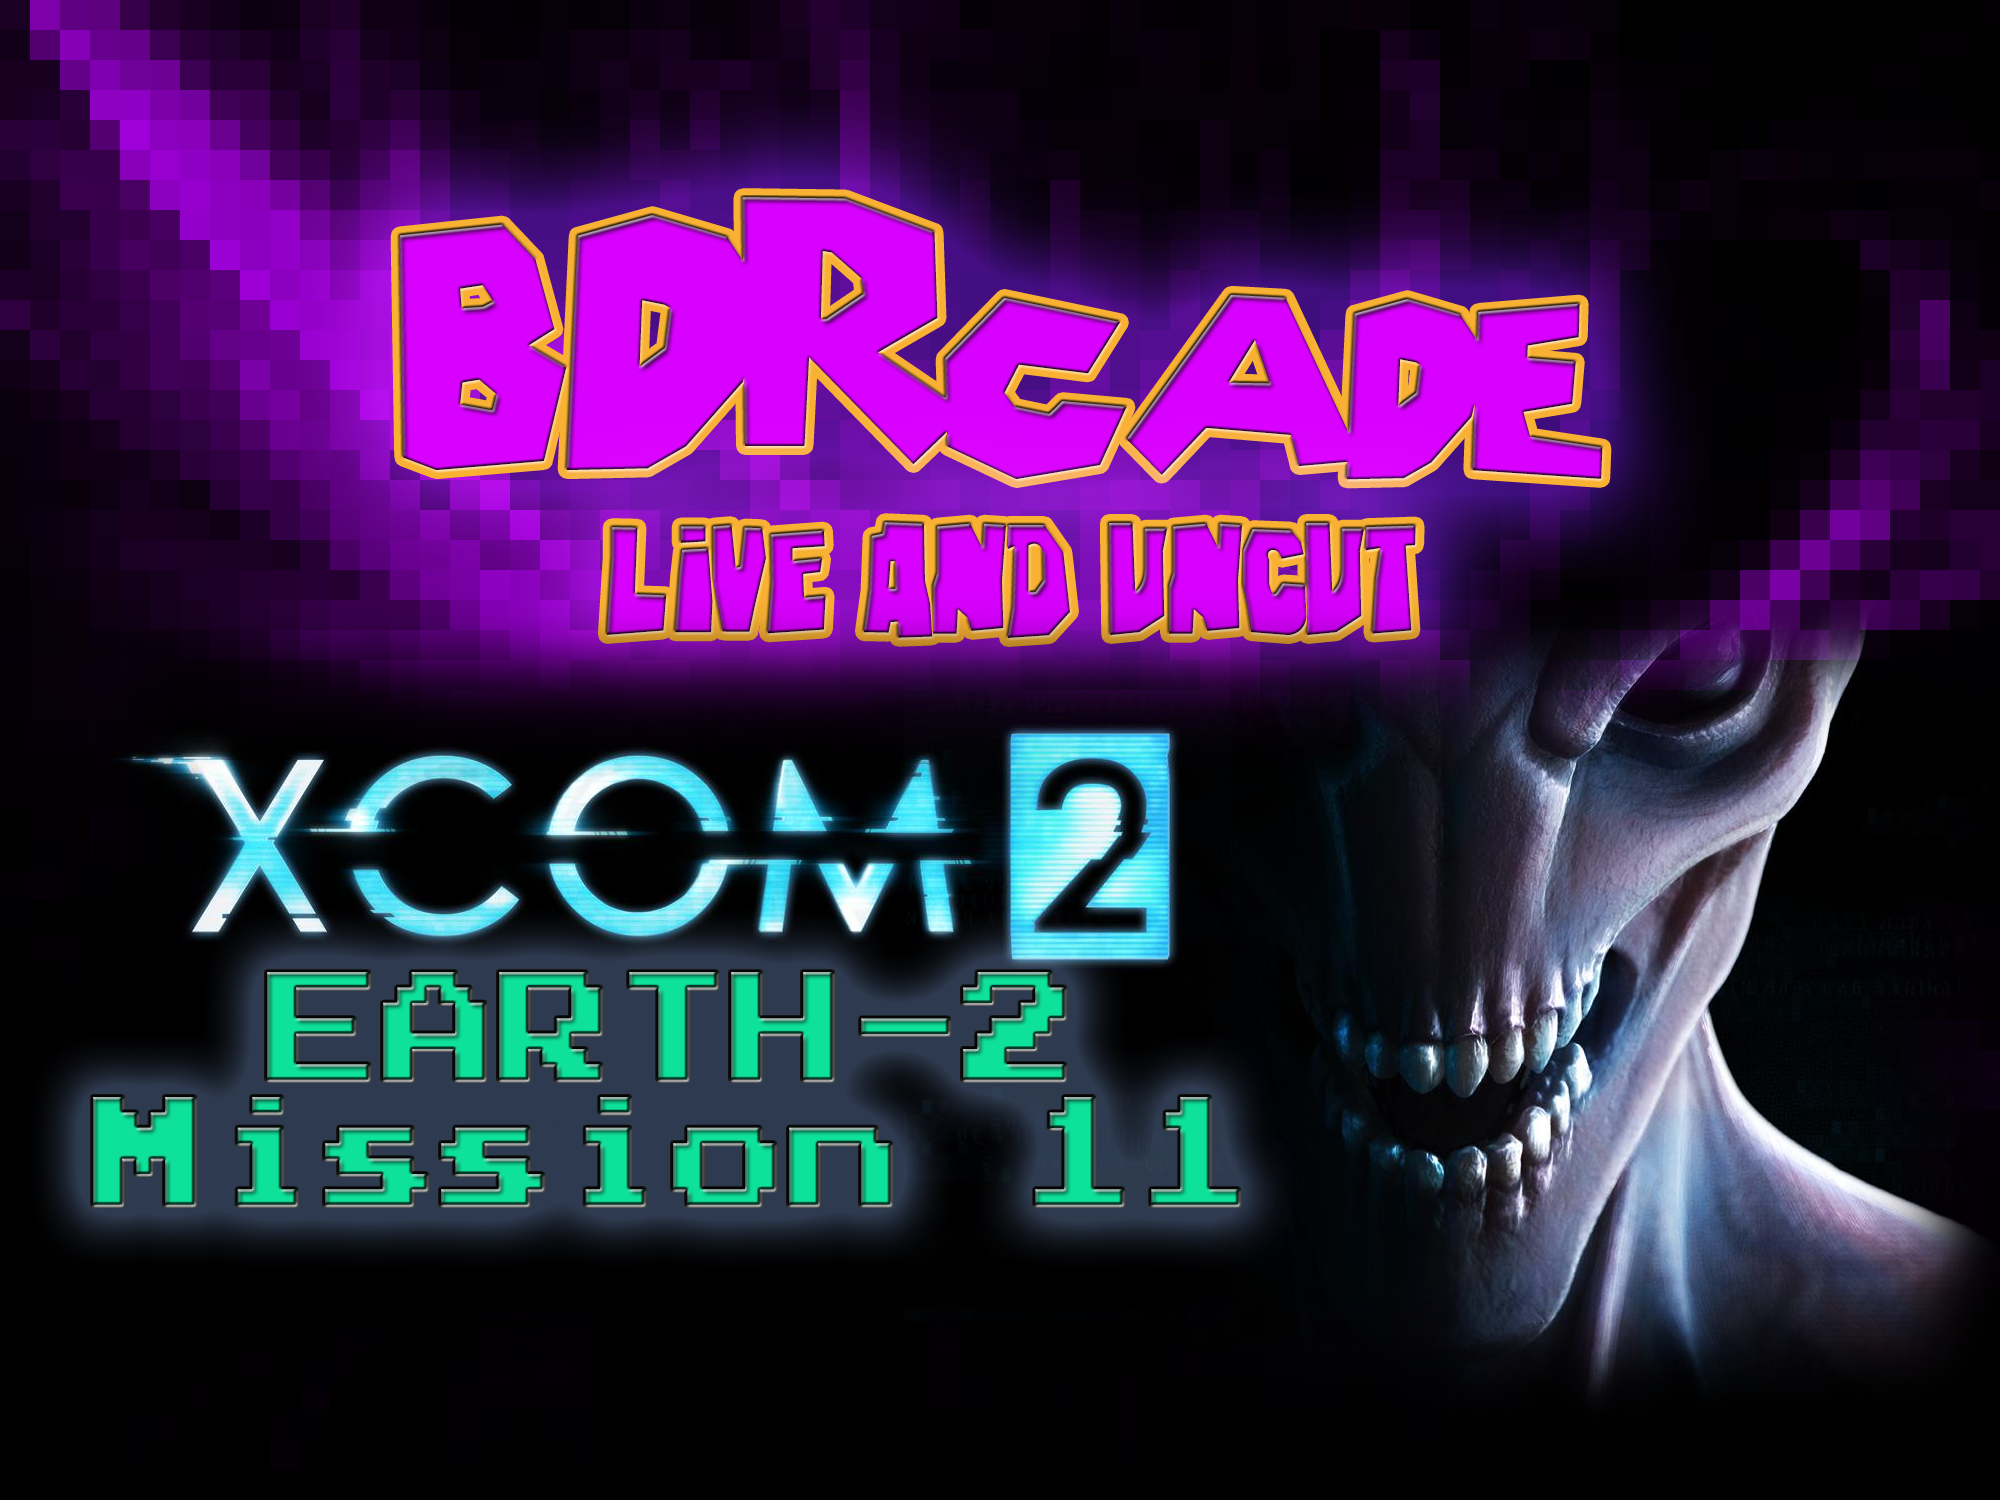 XCOM 2 (Earth-2) : Mission 11 – A BDRcade Live Stream